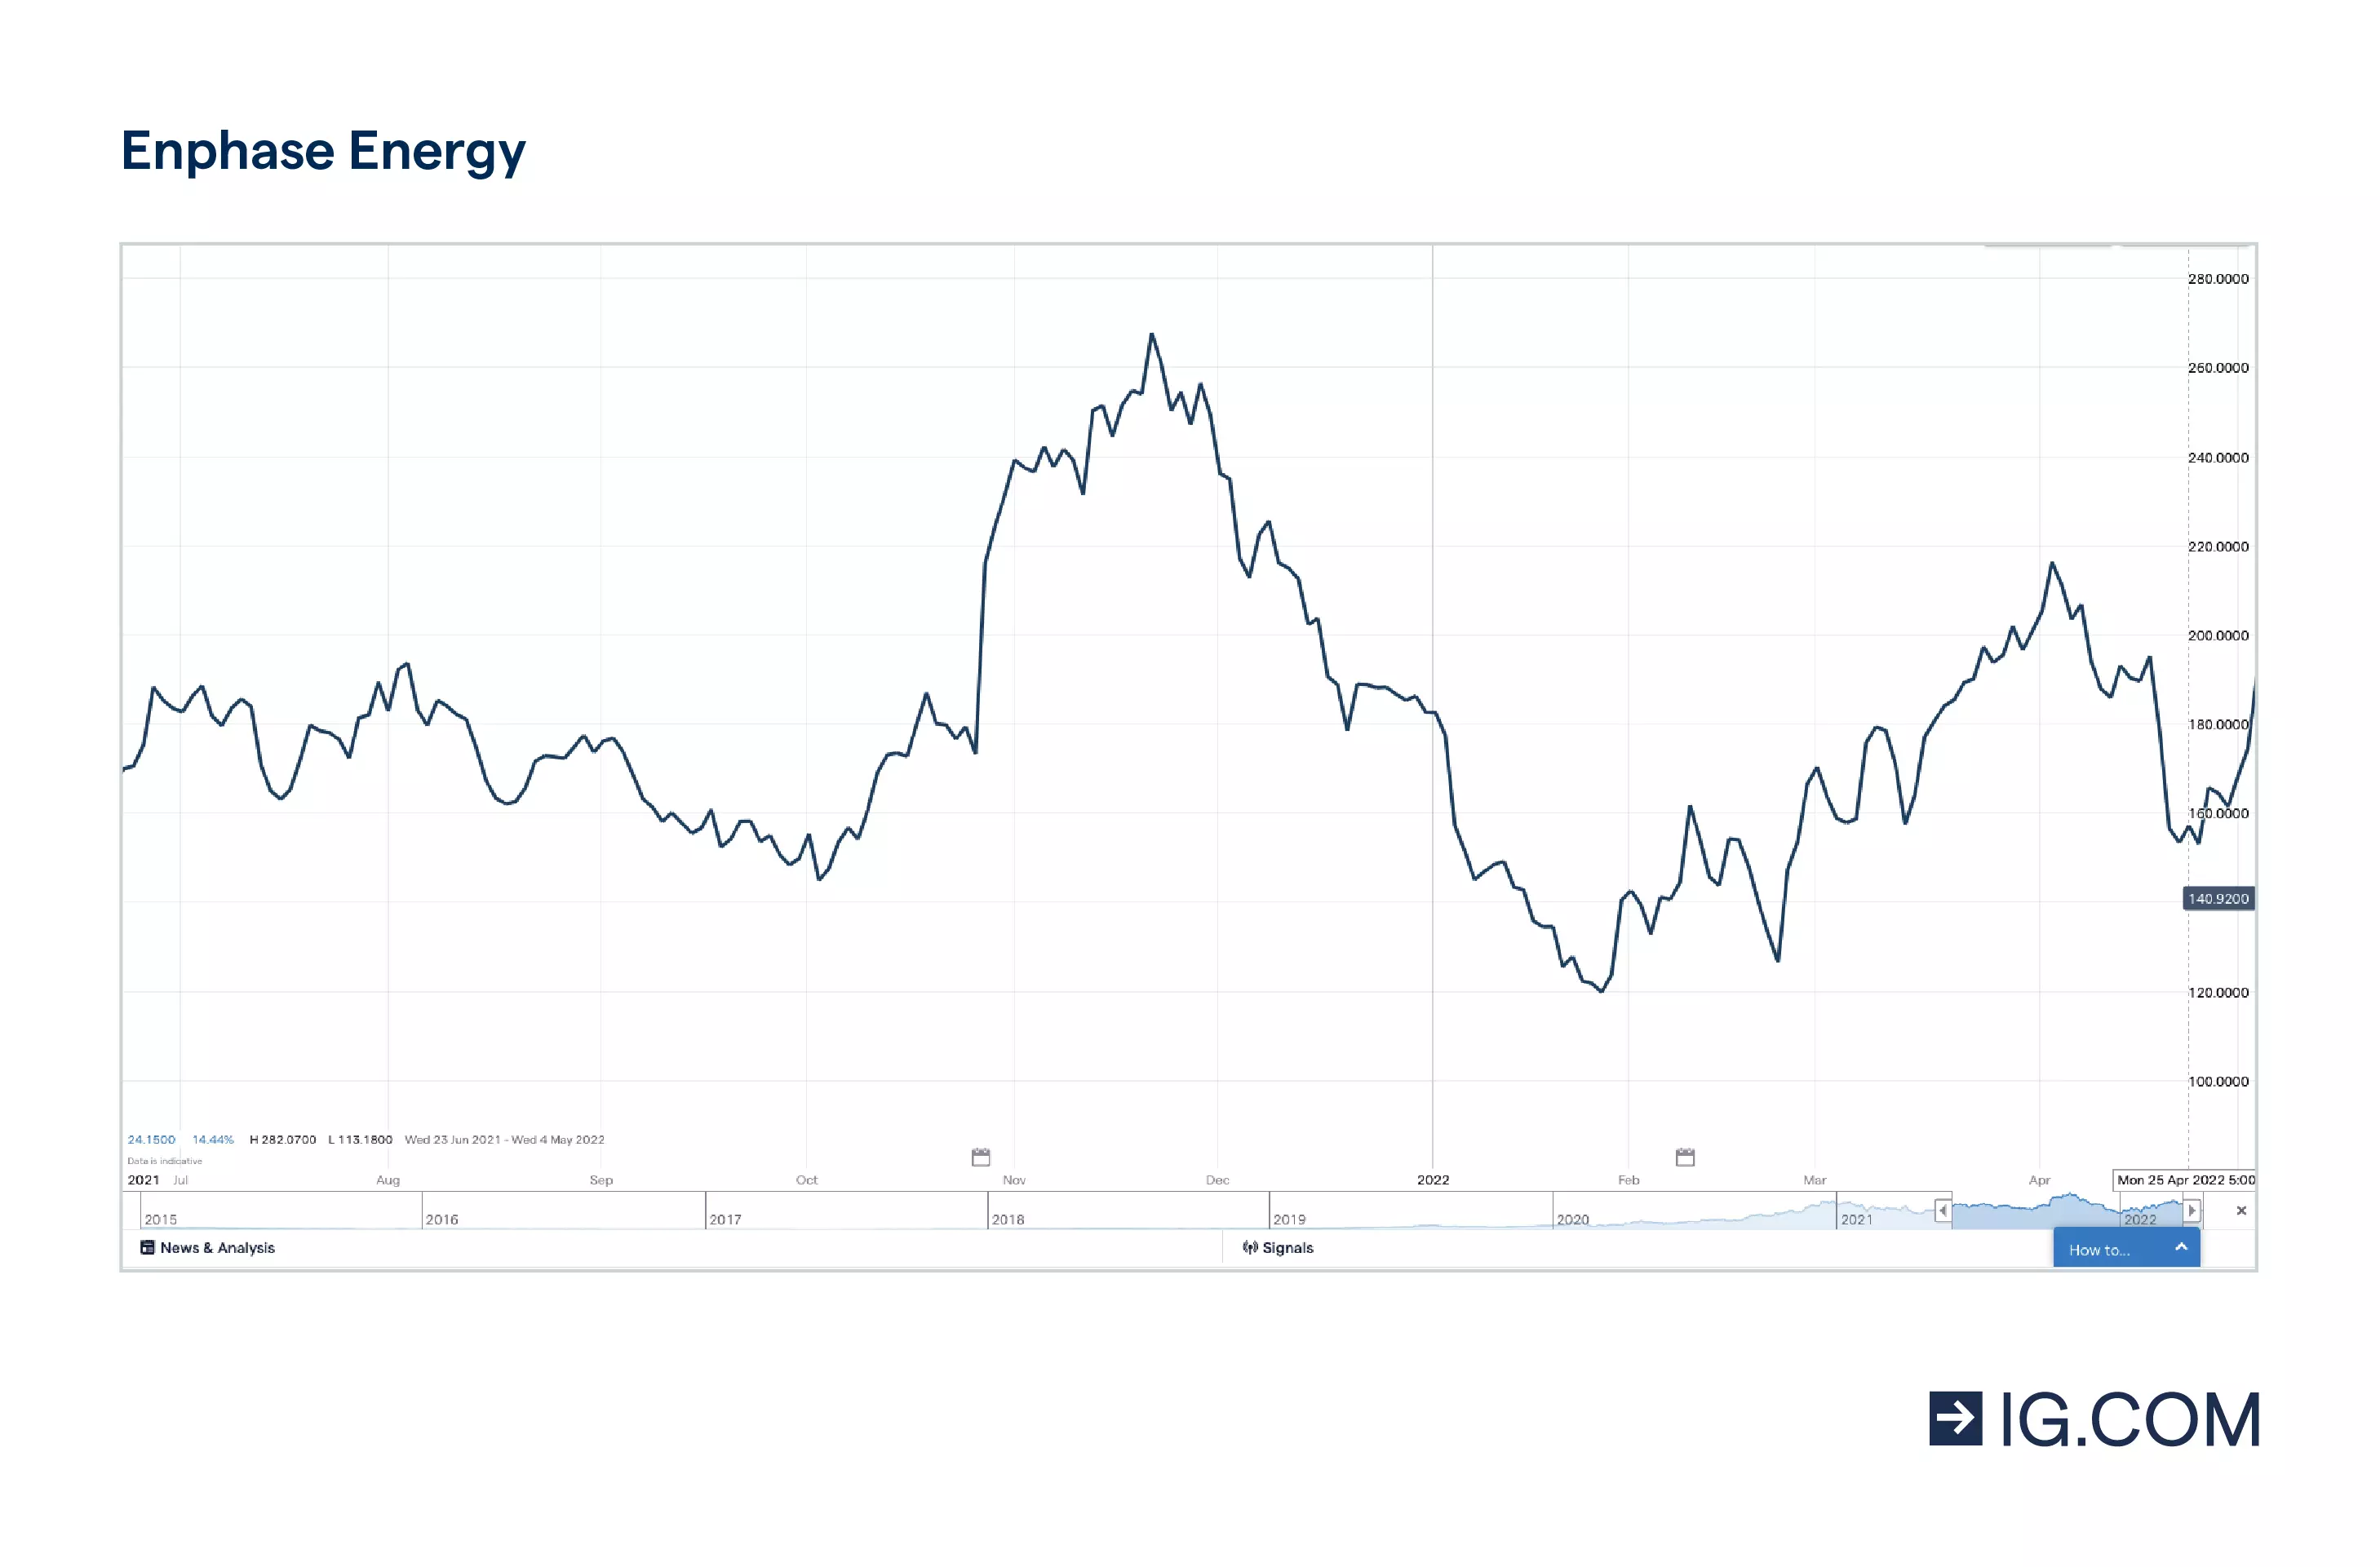 Il grafico mostra il titolo Enphase Energy su un orizzonte temporale di un anno, in cui la quotazione ha toccato vari livelli, con un massimo di 282,46 $ nel novembre del 2021, prima di un leggero calo, e 206,95 $ nell'aprile del 2022